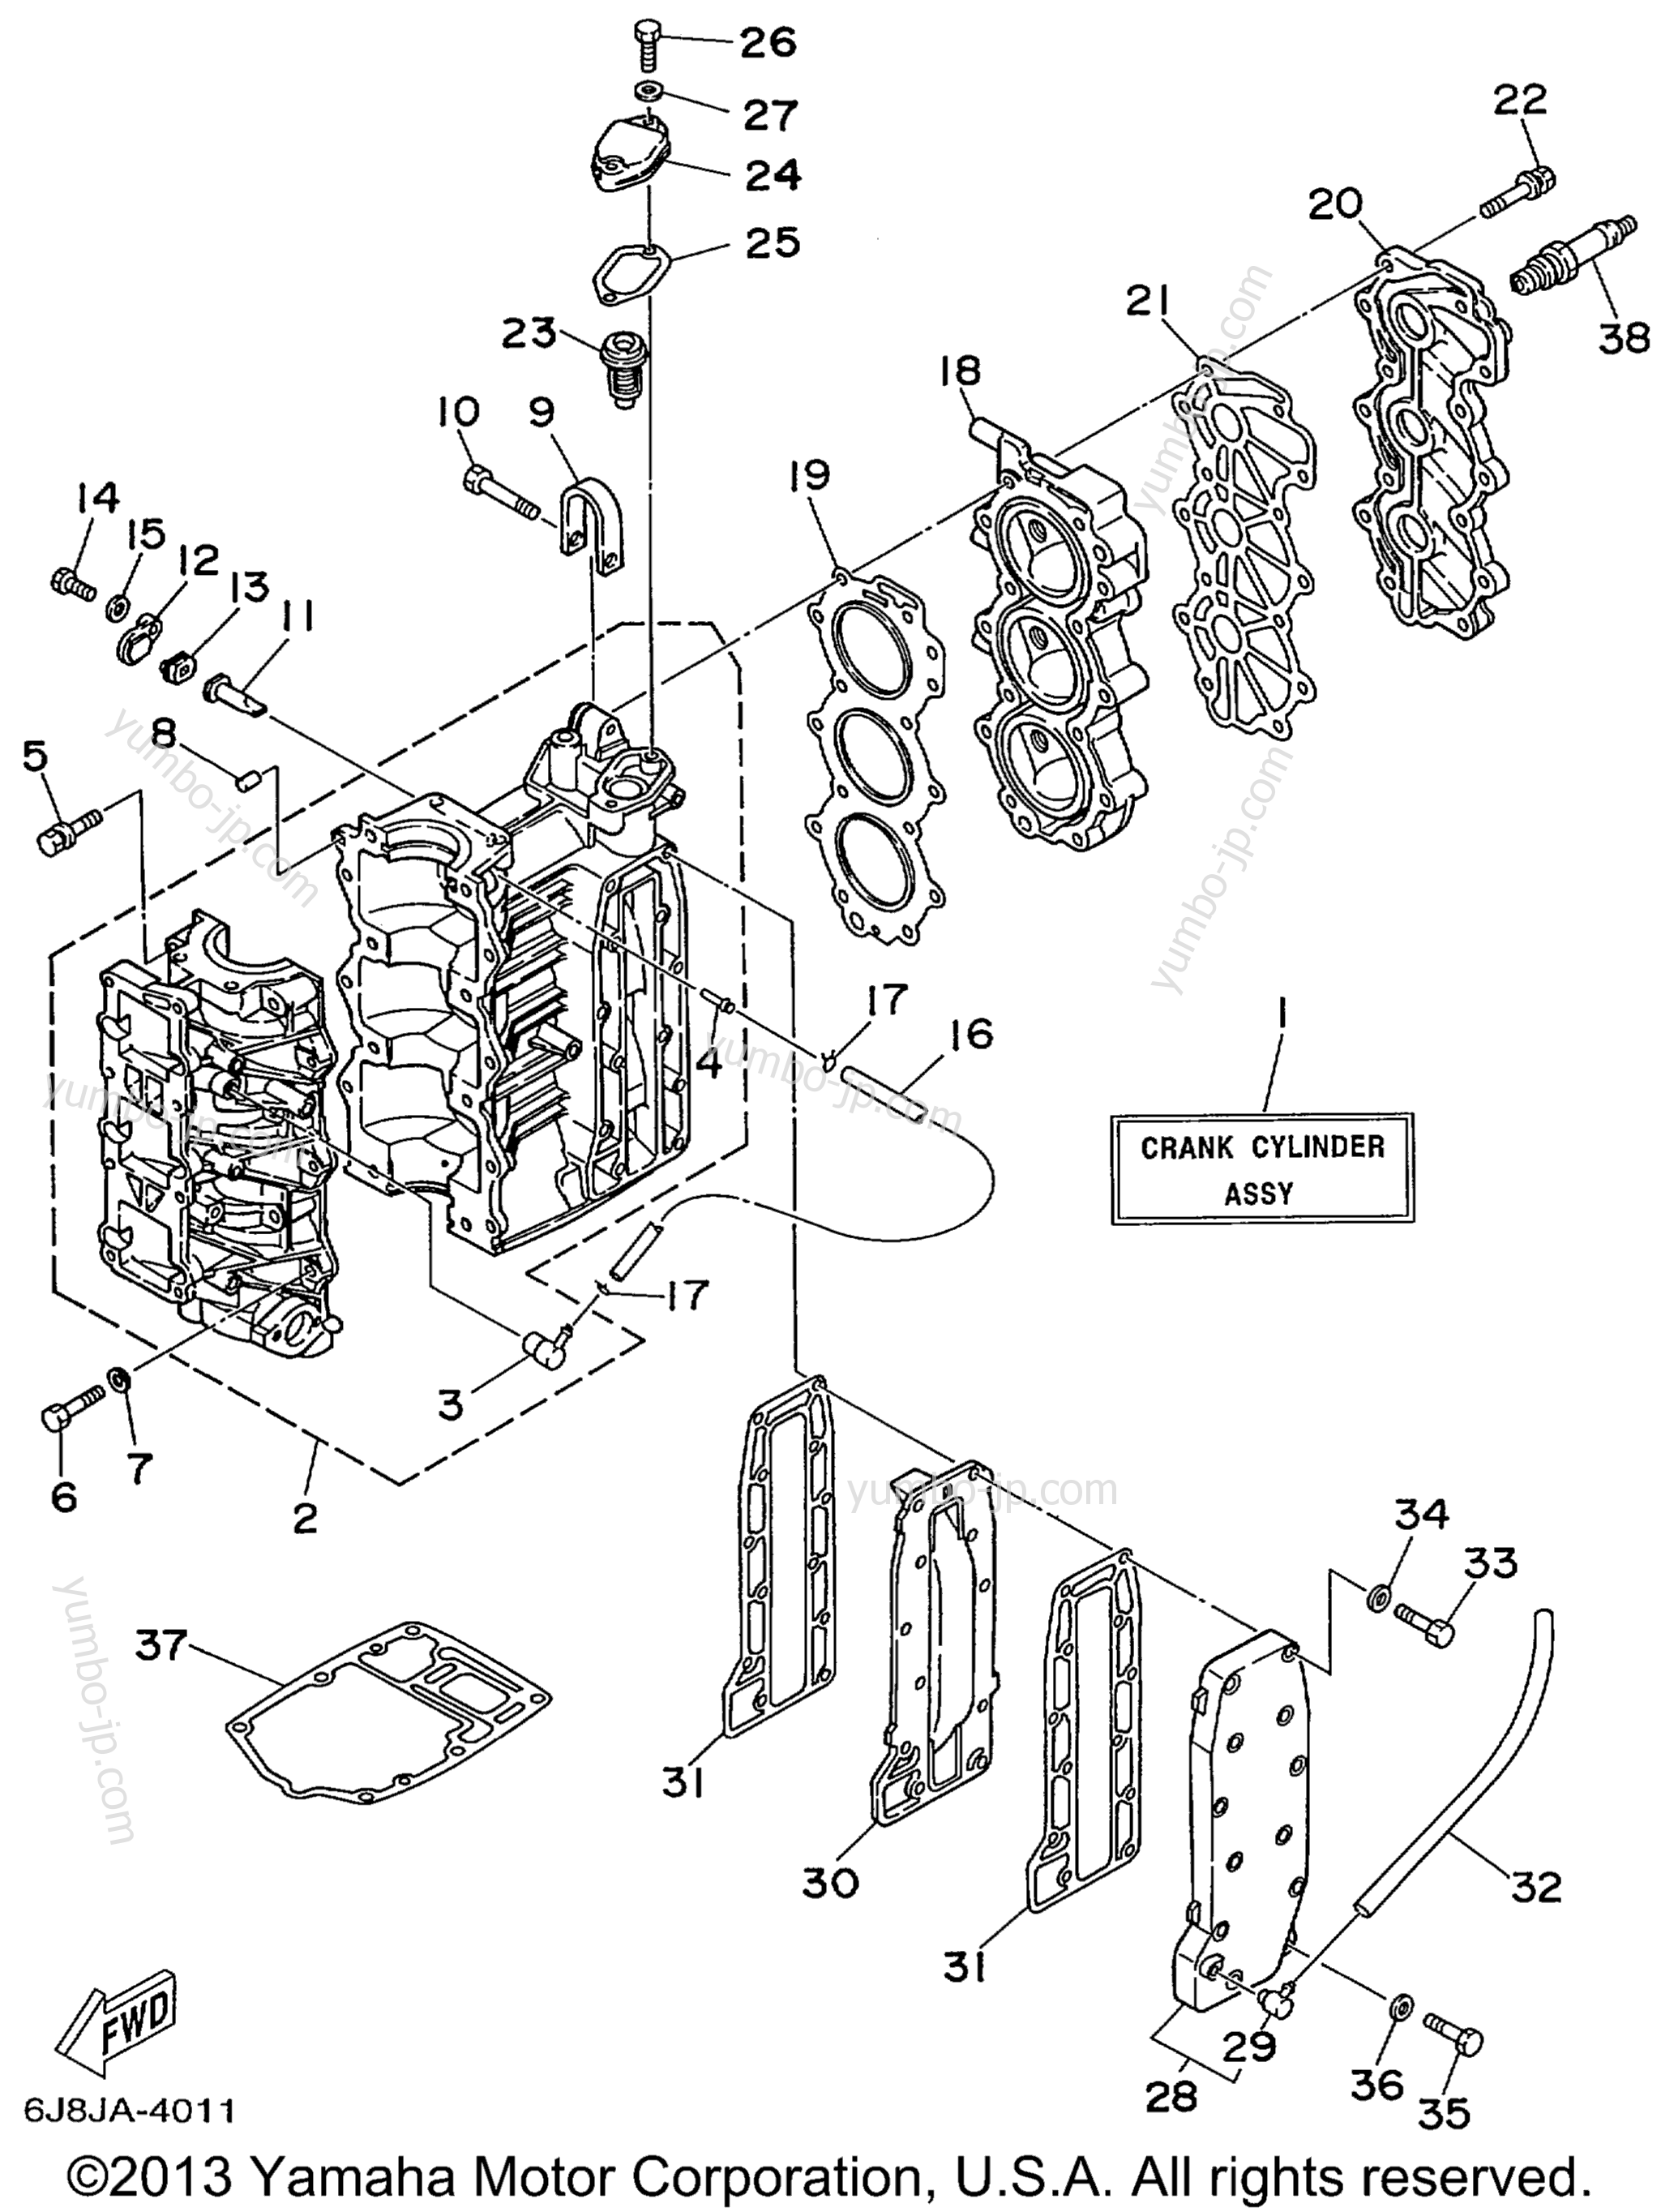 Cylinder Crankcase для лодочных моторов YAMAHA 30MSHX_MLHX_ELHX_ELRX (25MLHX3) 1999 г.